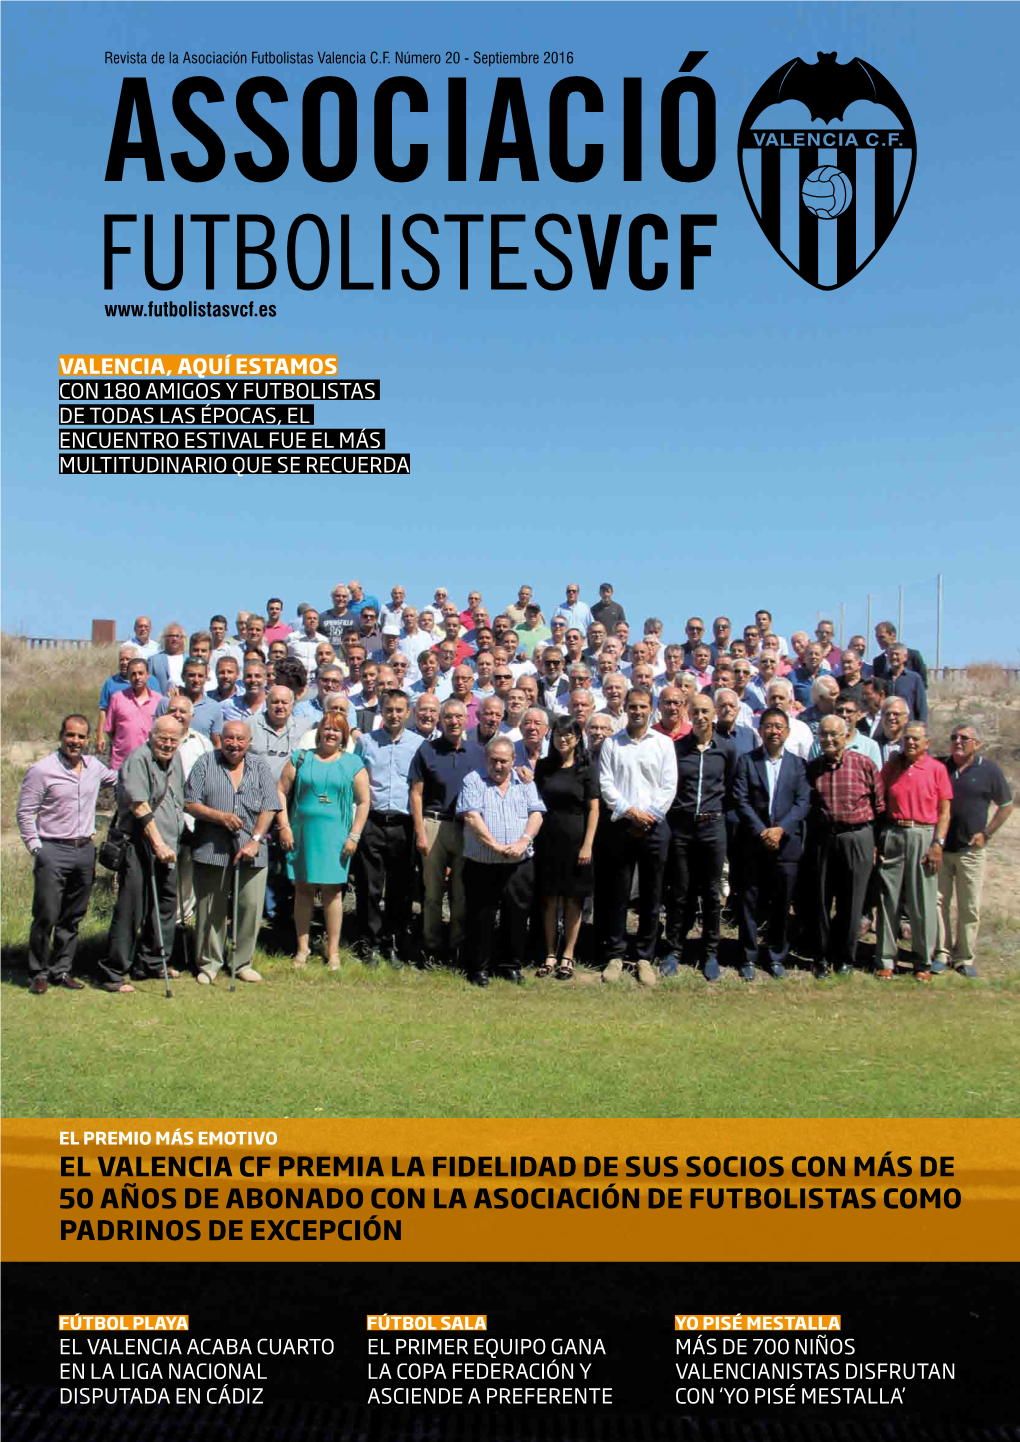 El Valencia CF Premia La Fidelidad De Sus Socios Con Más De 50 Años De Abonado Con La Asociación De Futbolistas Como Padrinos De Excepción